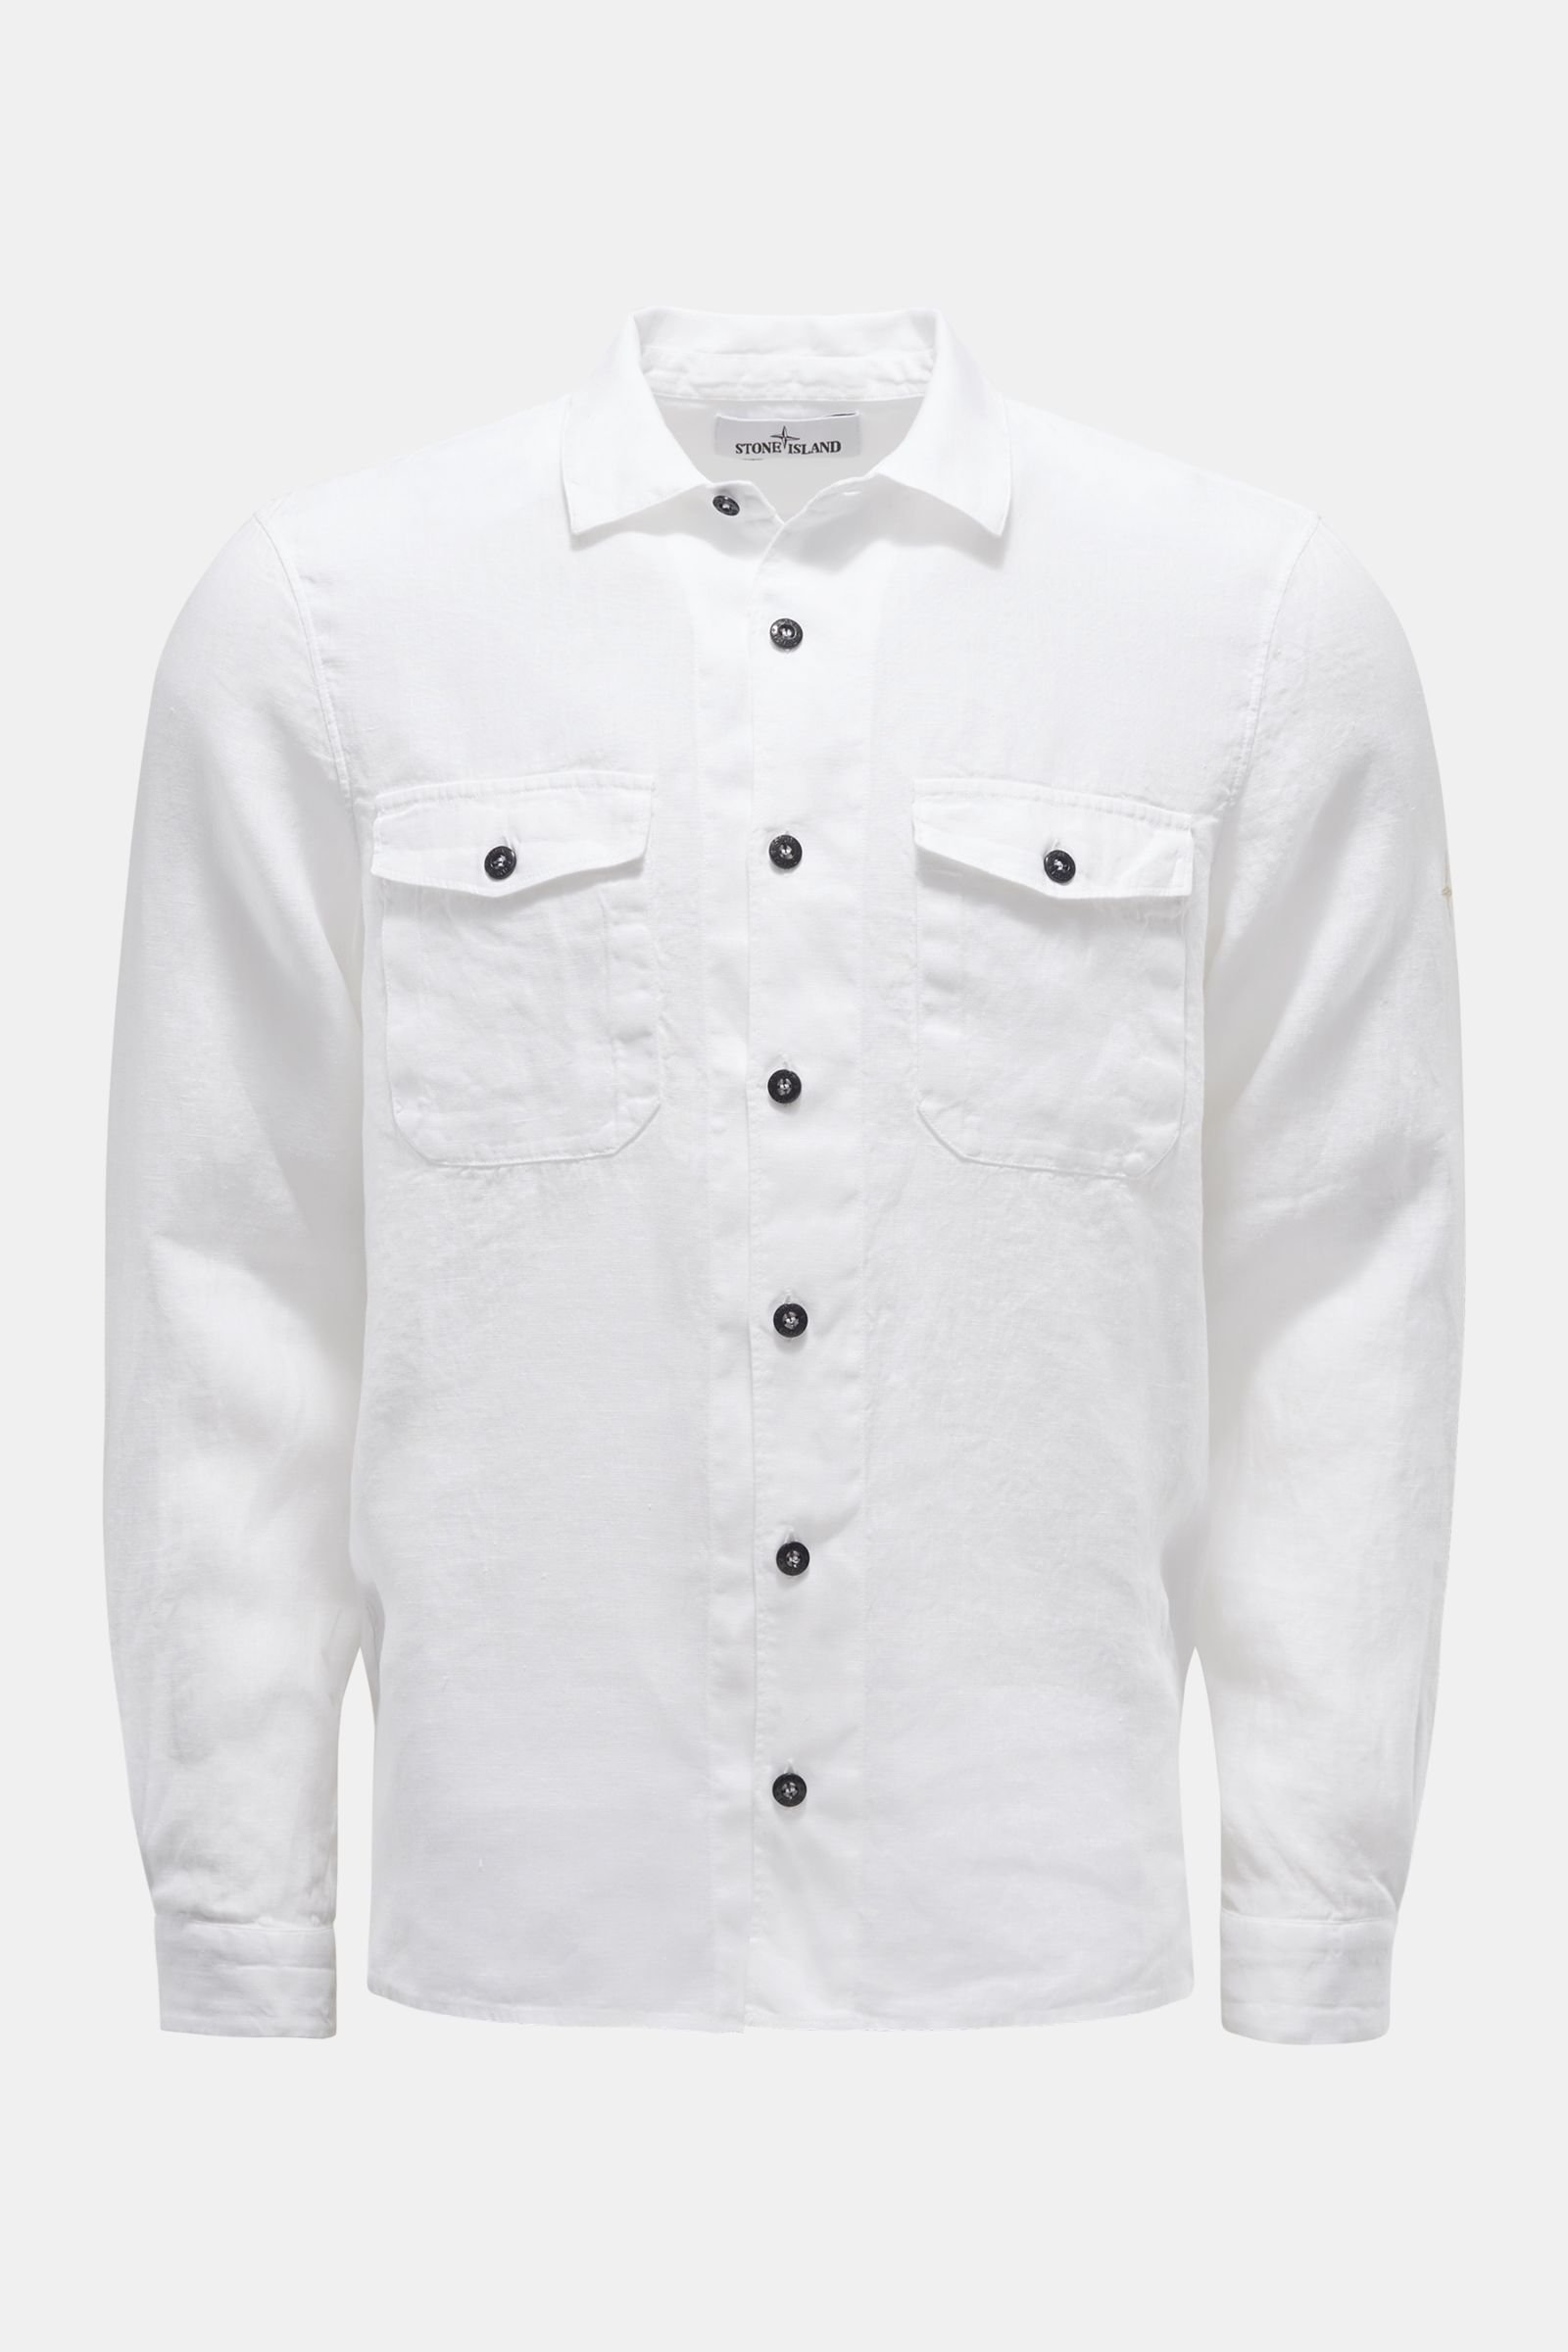 Linen shirt slim collar white